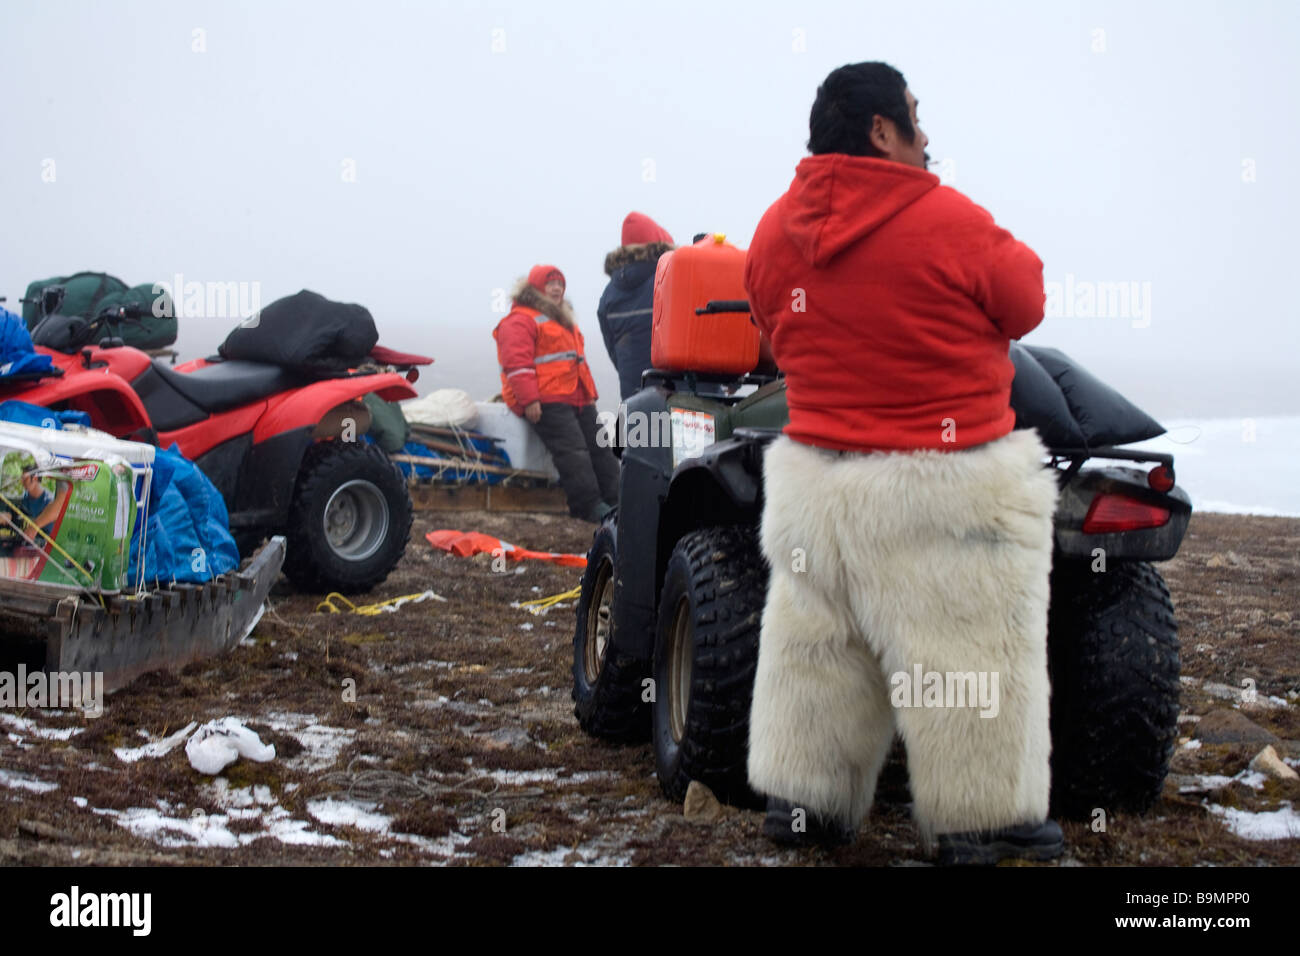 Les Rangers canadiens dans la fourrure de phoque pantalons en faisant une pause au cours d'entraînement, de l'Arctique canadien, Canada Banque D'Images